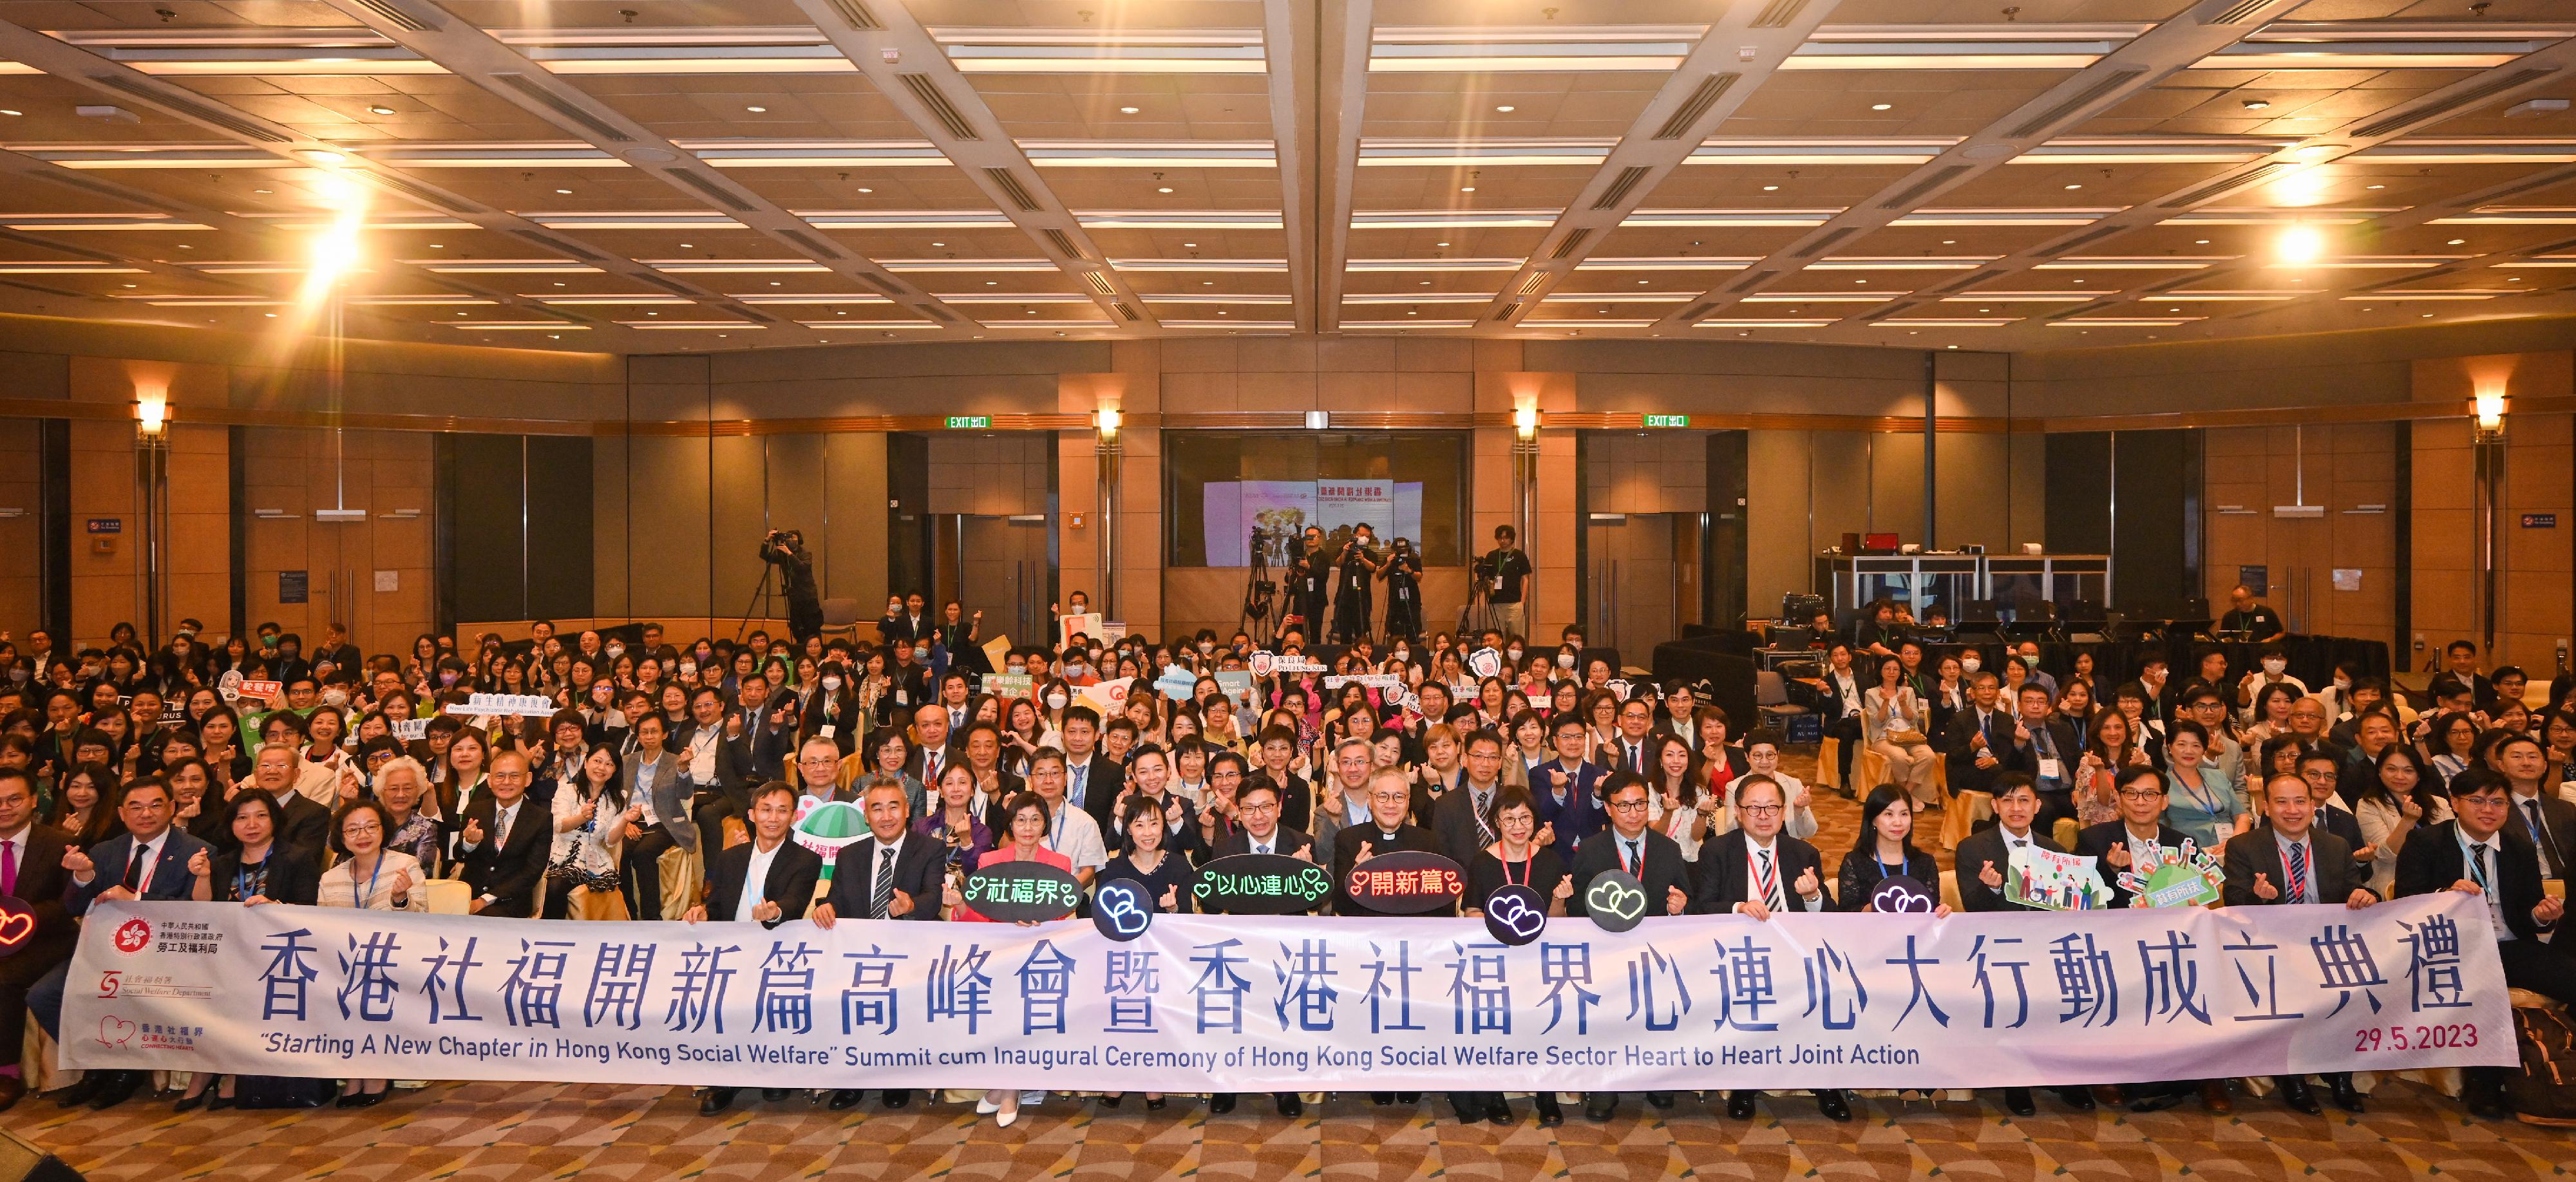 香港社福開新篇高峰會暨香港社福界心連心大行動成立典禮今日（五月二十九日）舉行。圖示參加者在高峰會的閉幕儀式上合照。